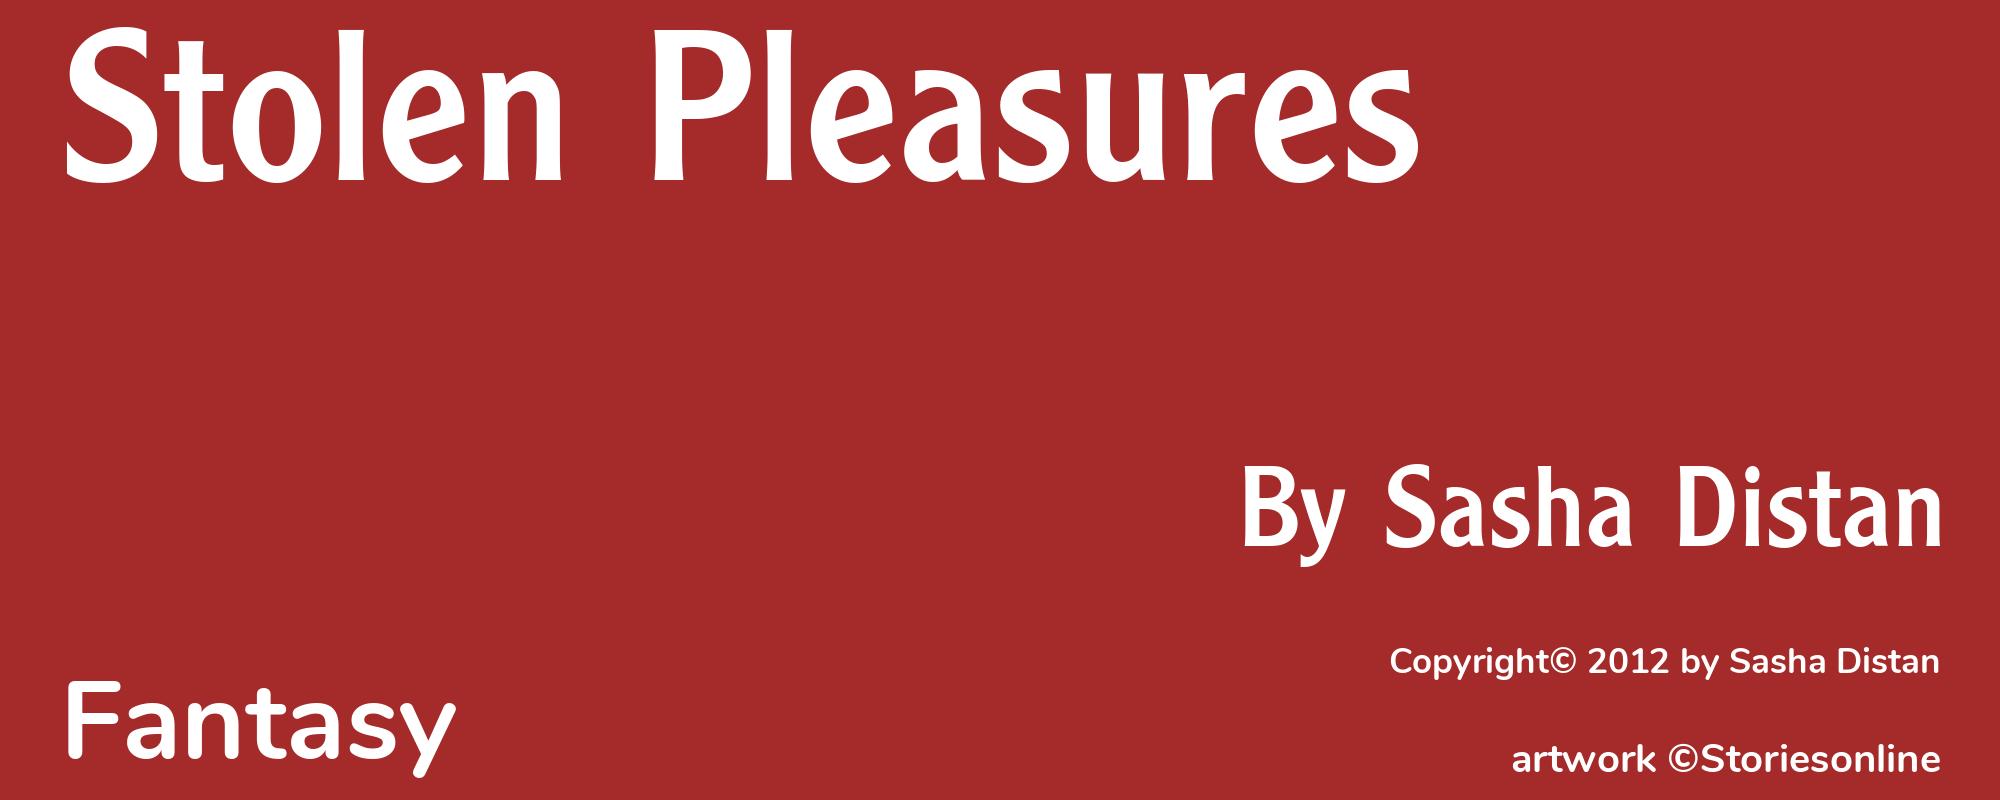 Stolen Pleasures - Cover